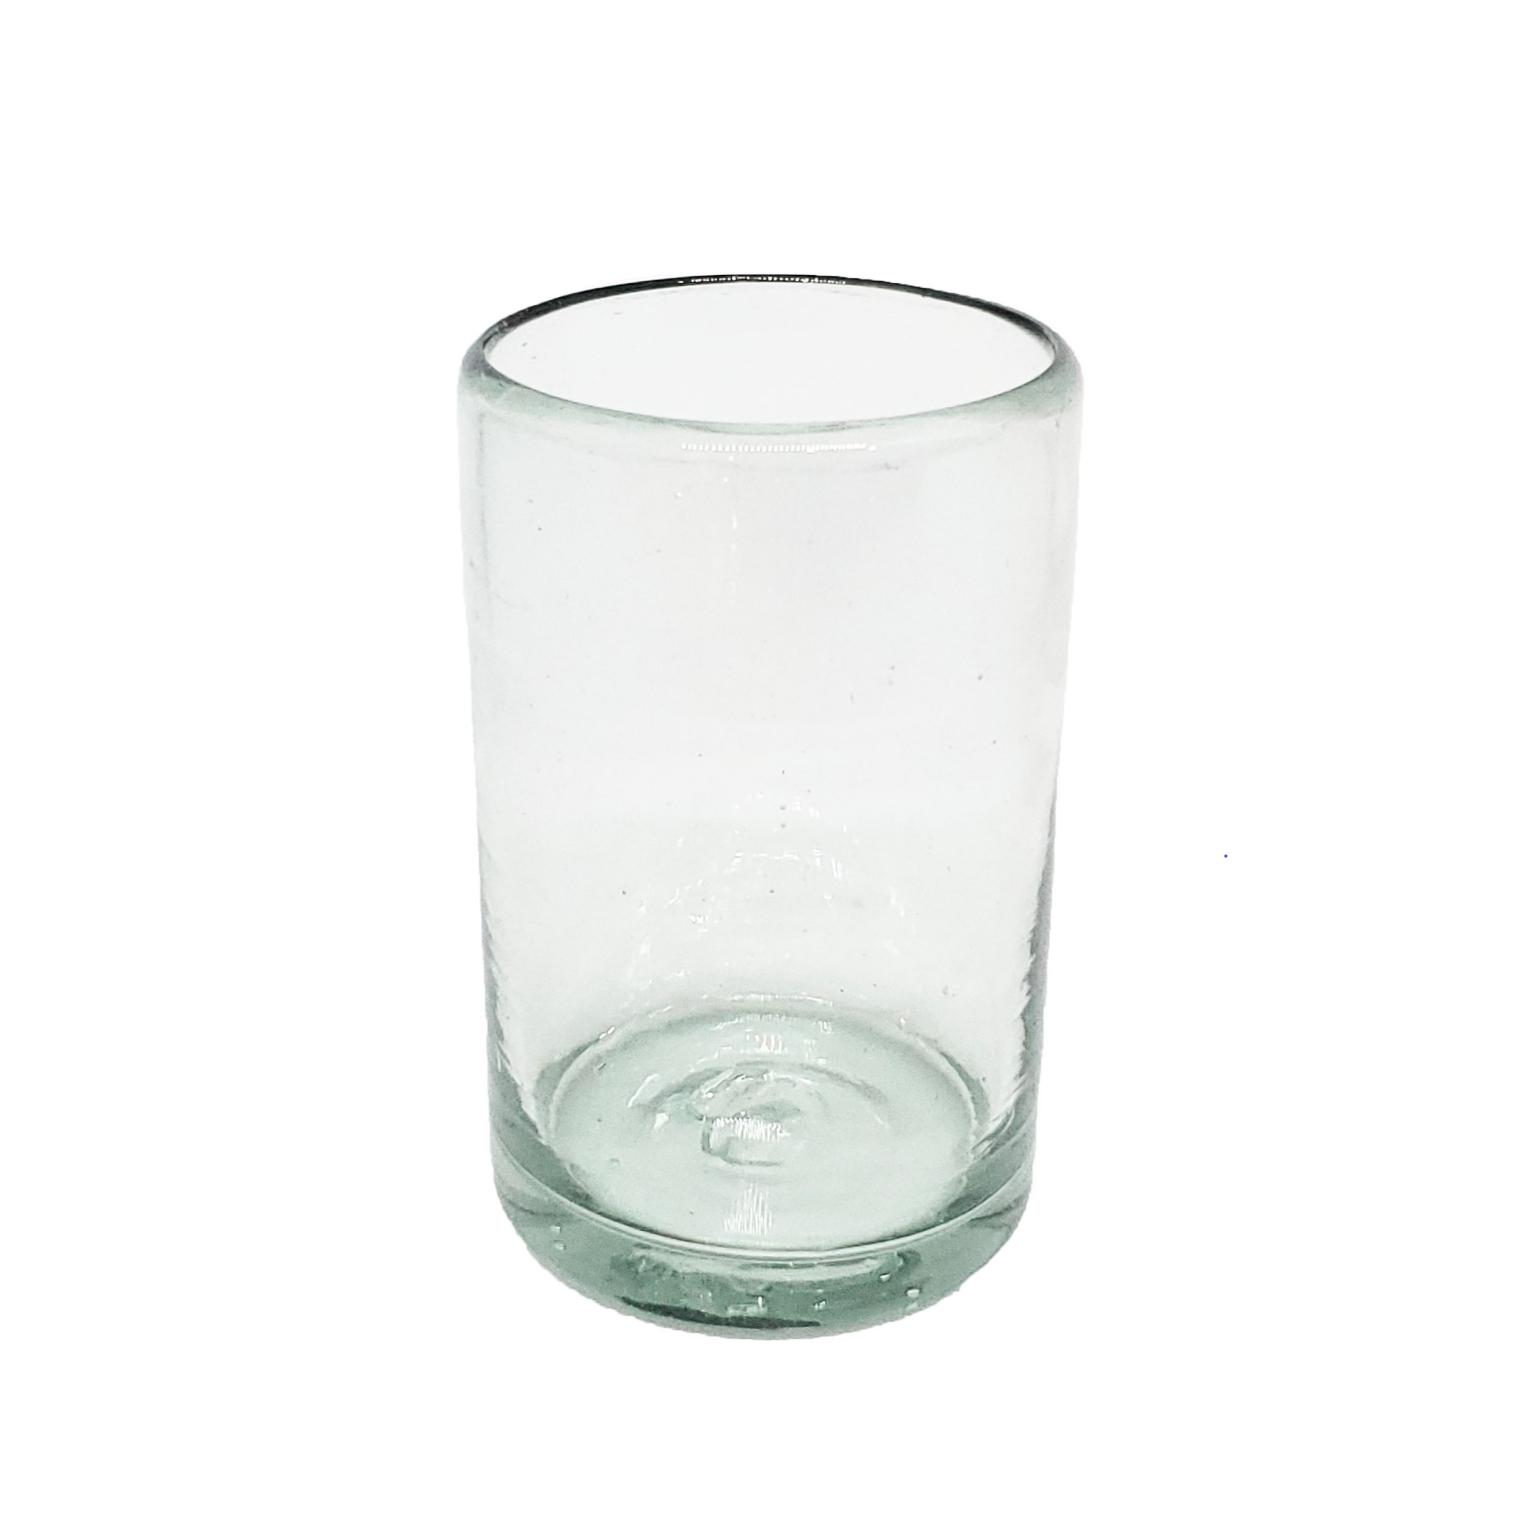 Ofertas / Juego de 6 vasos Jugo 9oz Transparentes / Éstos artesanales vasos le darán un toque clásico a su bebida favorita.